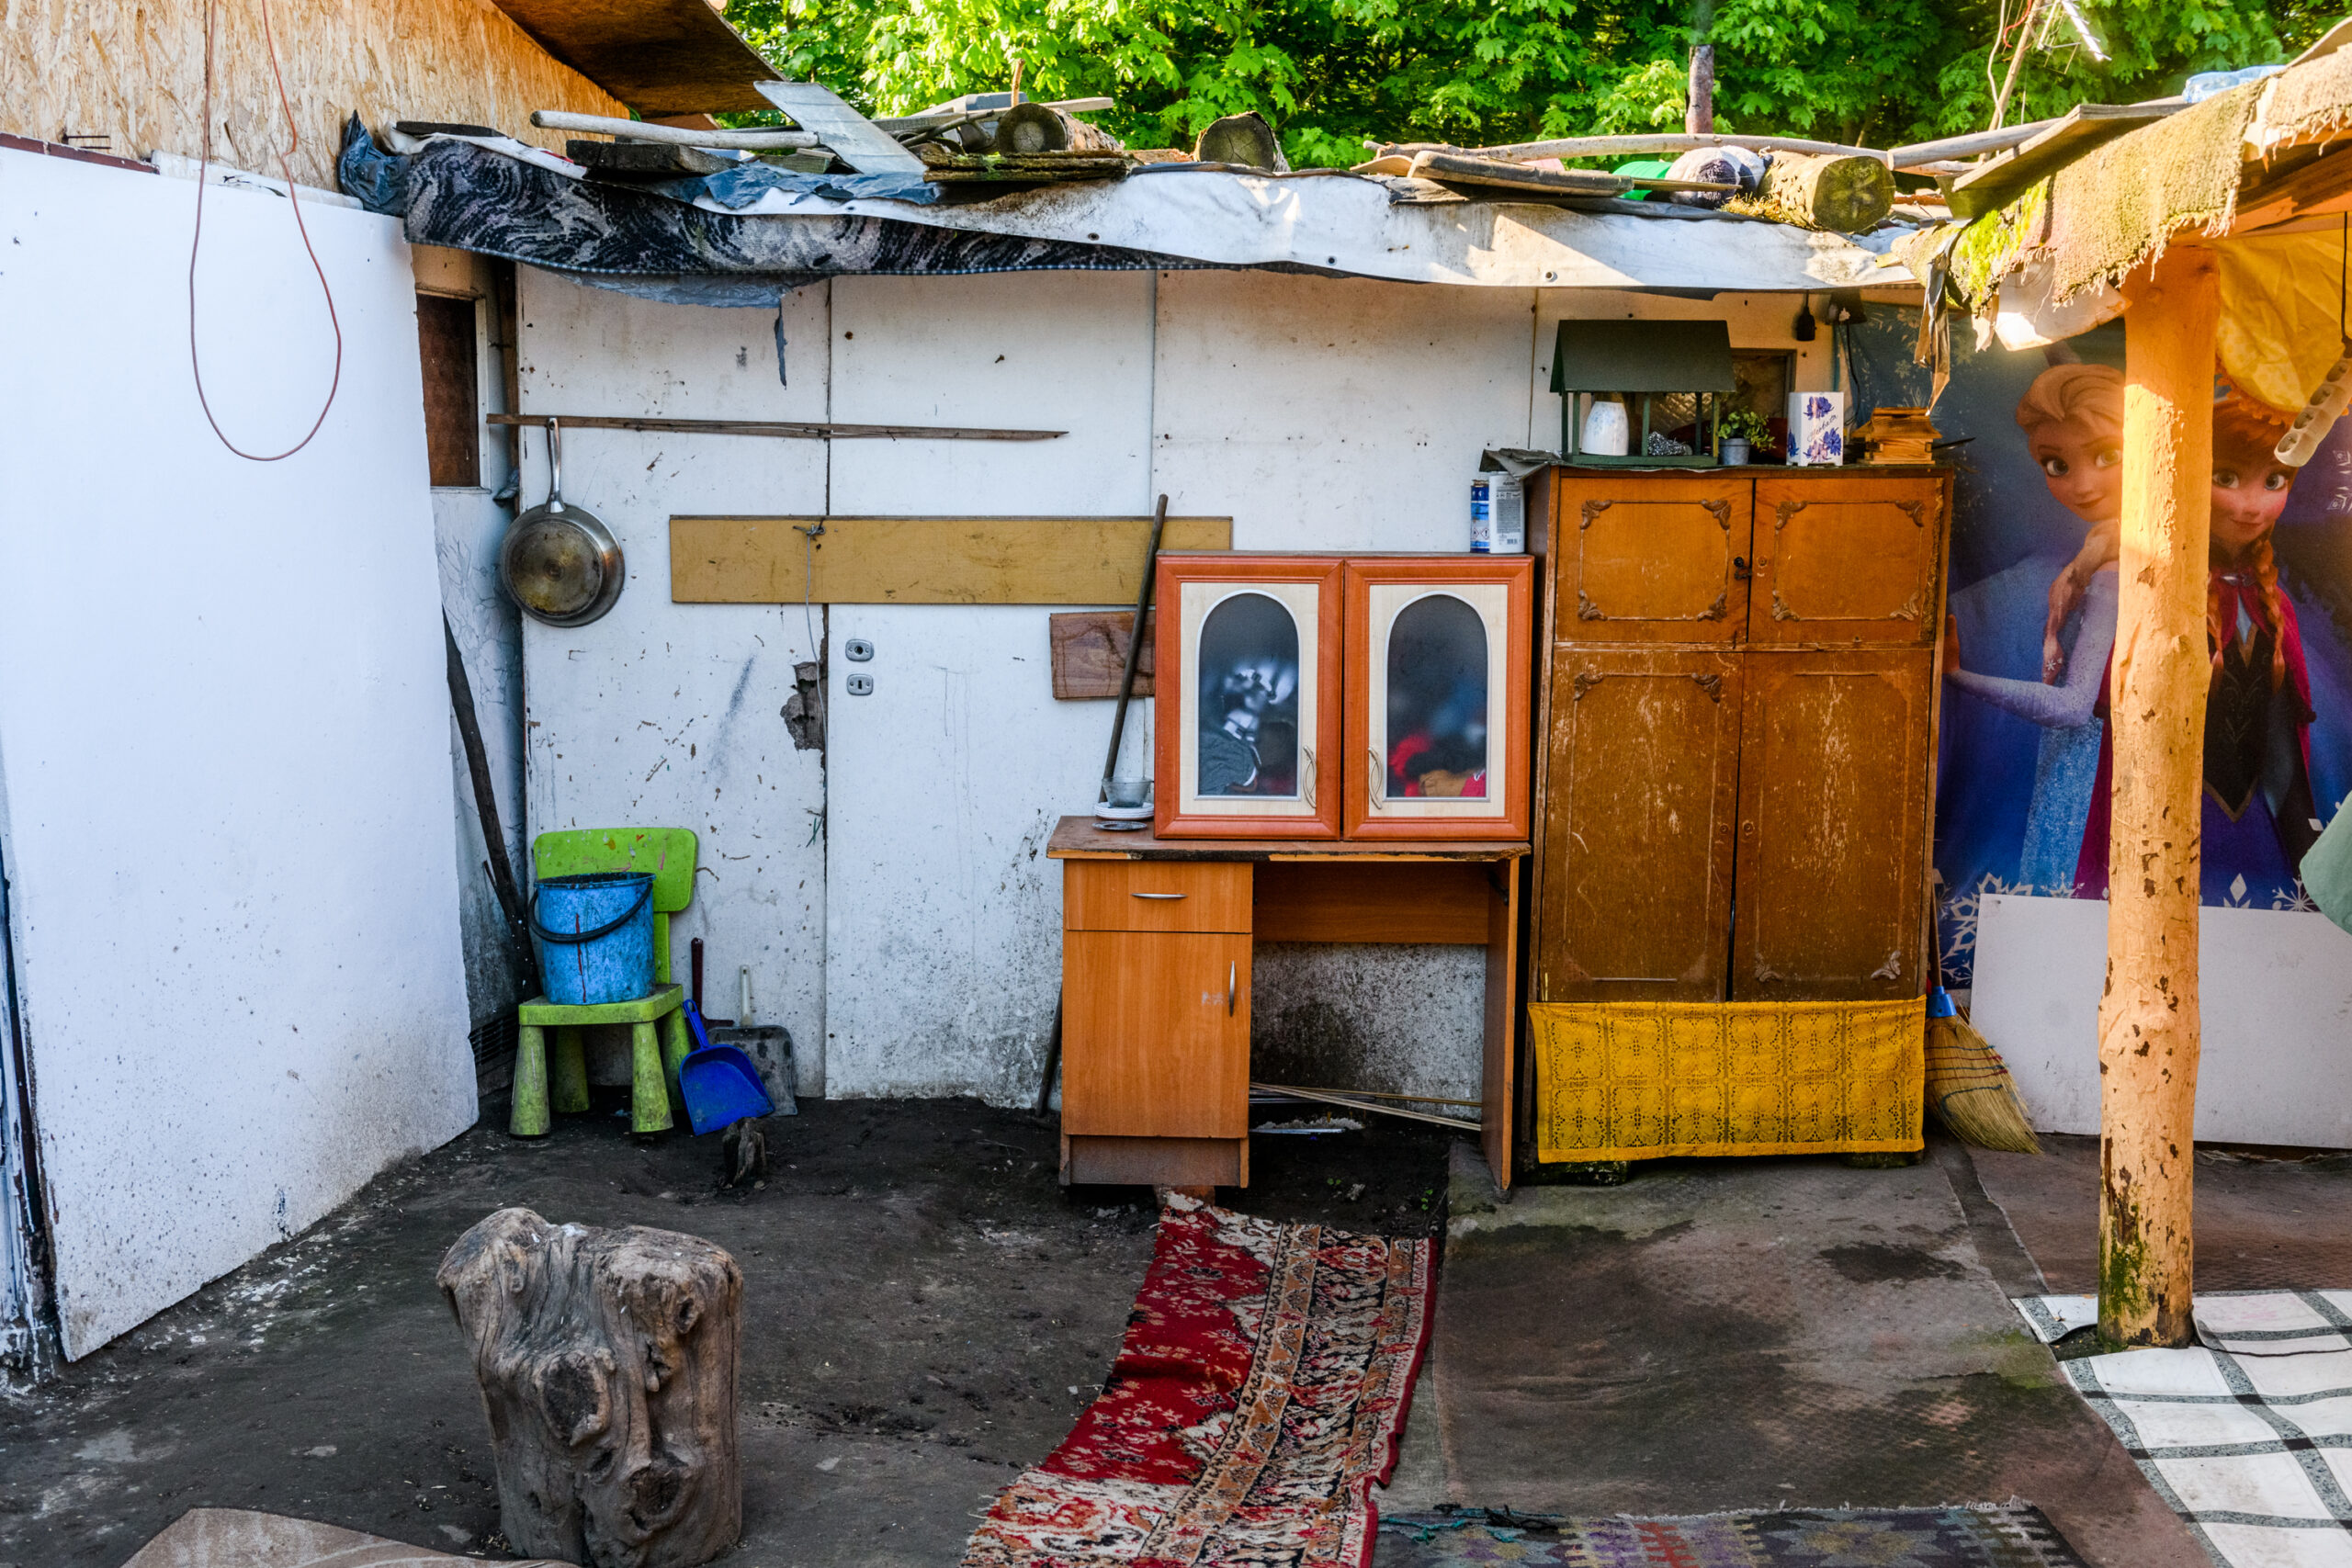 Społeczność romska od wielu lat zamieszkuje teren dawnych działek przy ulicy Lechickiej. Na kilkuhektarowym obszarze starają się radzić sobie, jak tylko potrafią.